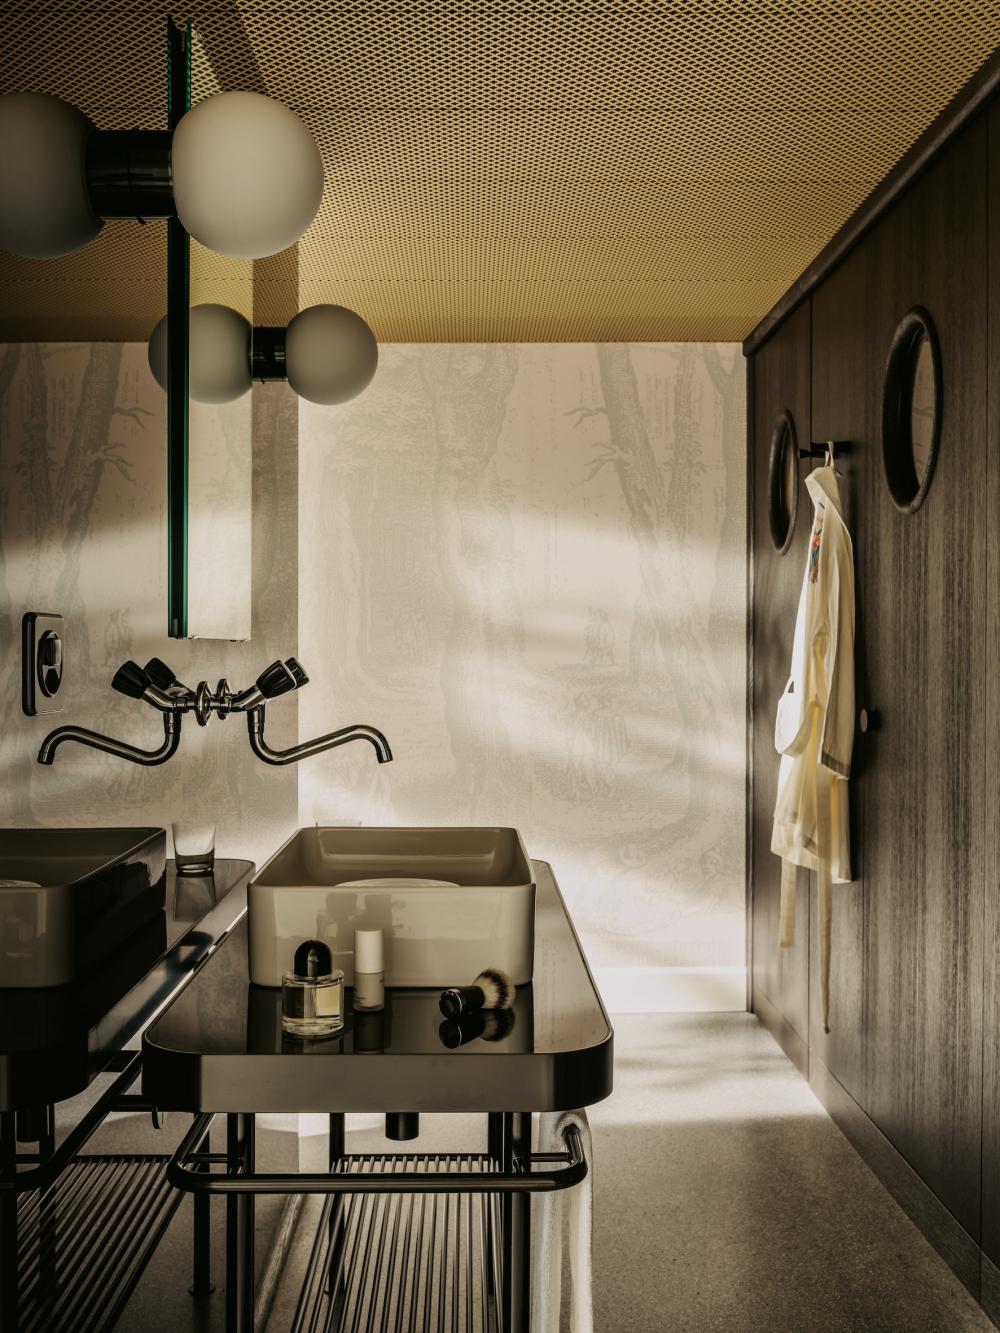 Detailverliebter Waschbereich: Das Lavabo hat eine Insel, in die Toilette und die Dusche blickt  man durch ein rundes Fenster. Kosmetikprodukte von  Soeder stehen zur Benutzung bereit.